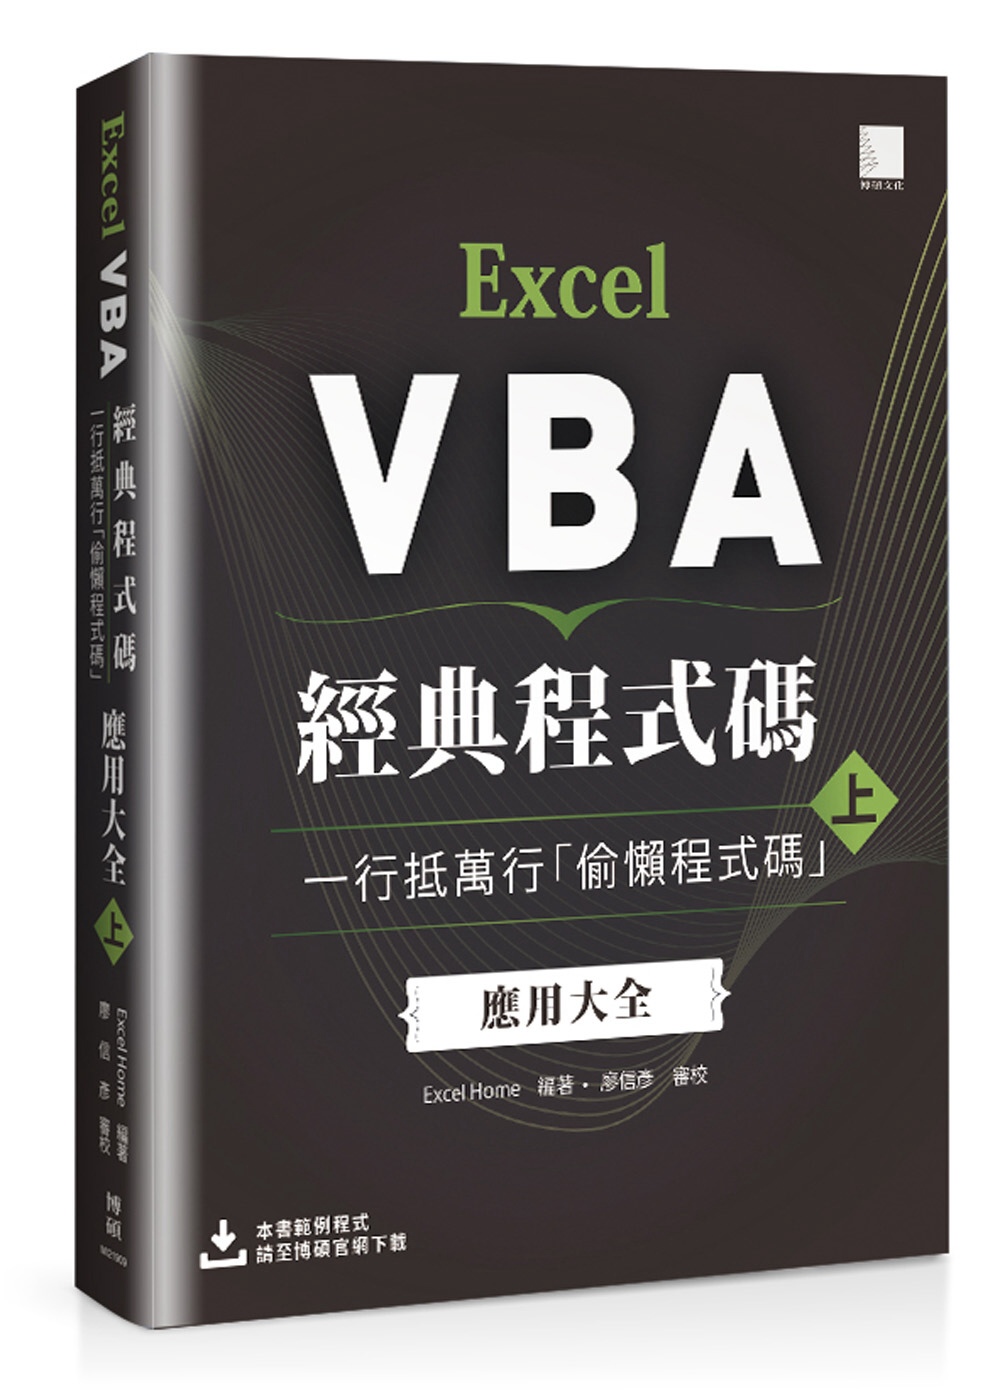 Excel VBA經典程式碼：一行抵萬行「偷懶程式碼」應用大全 (上)